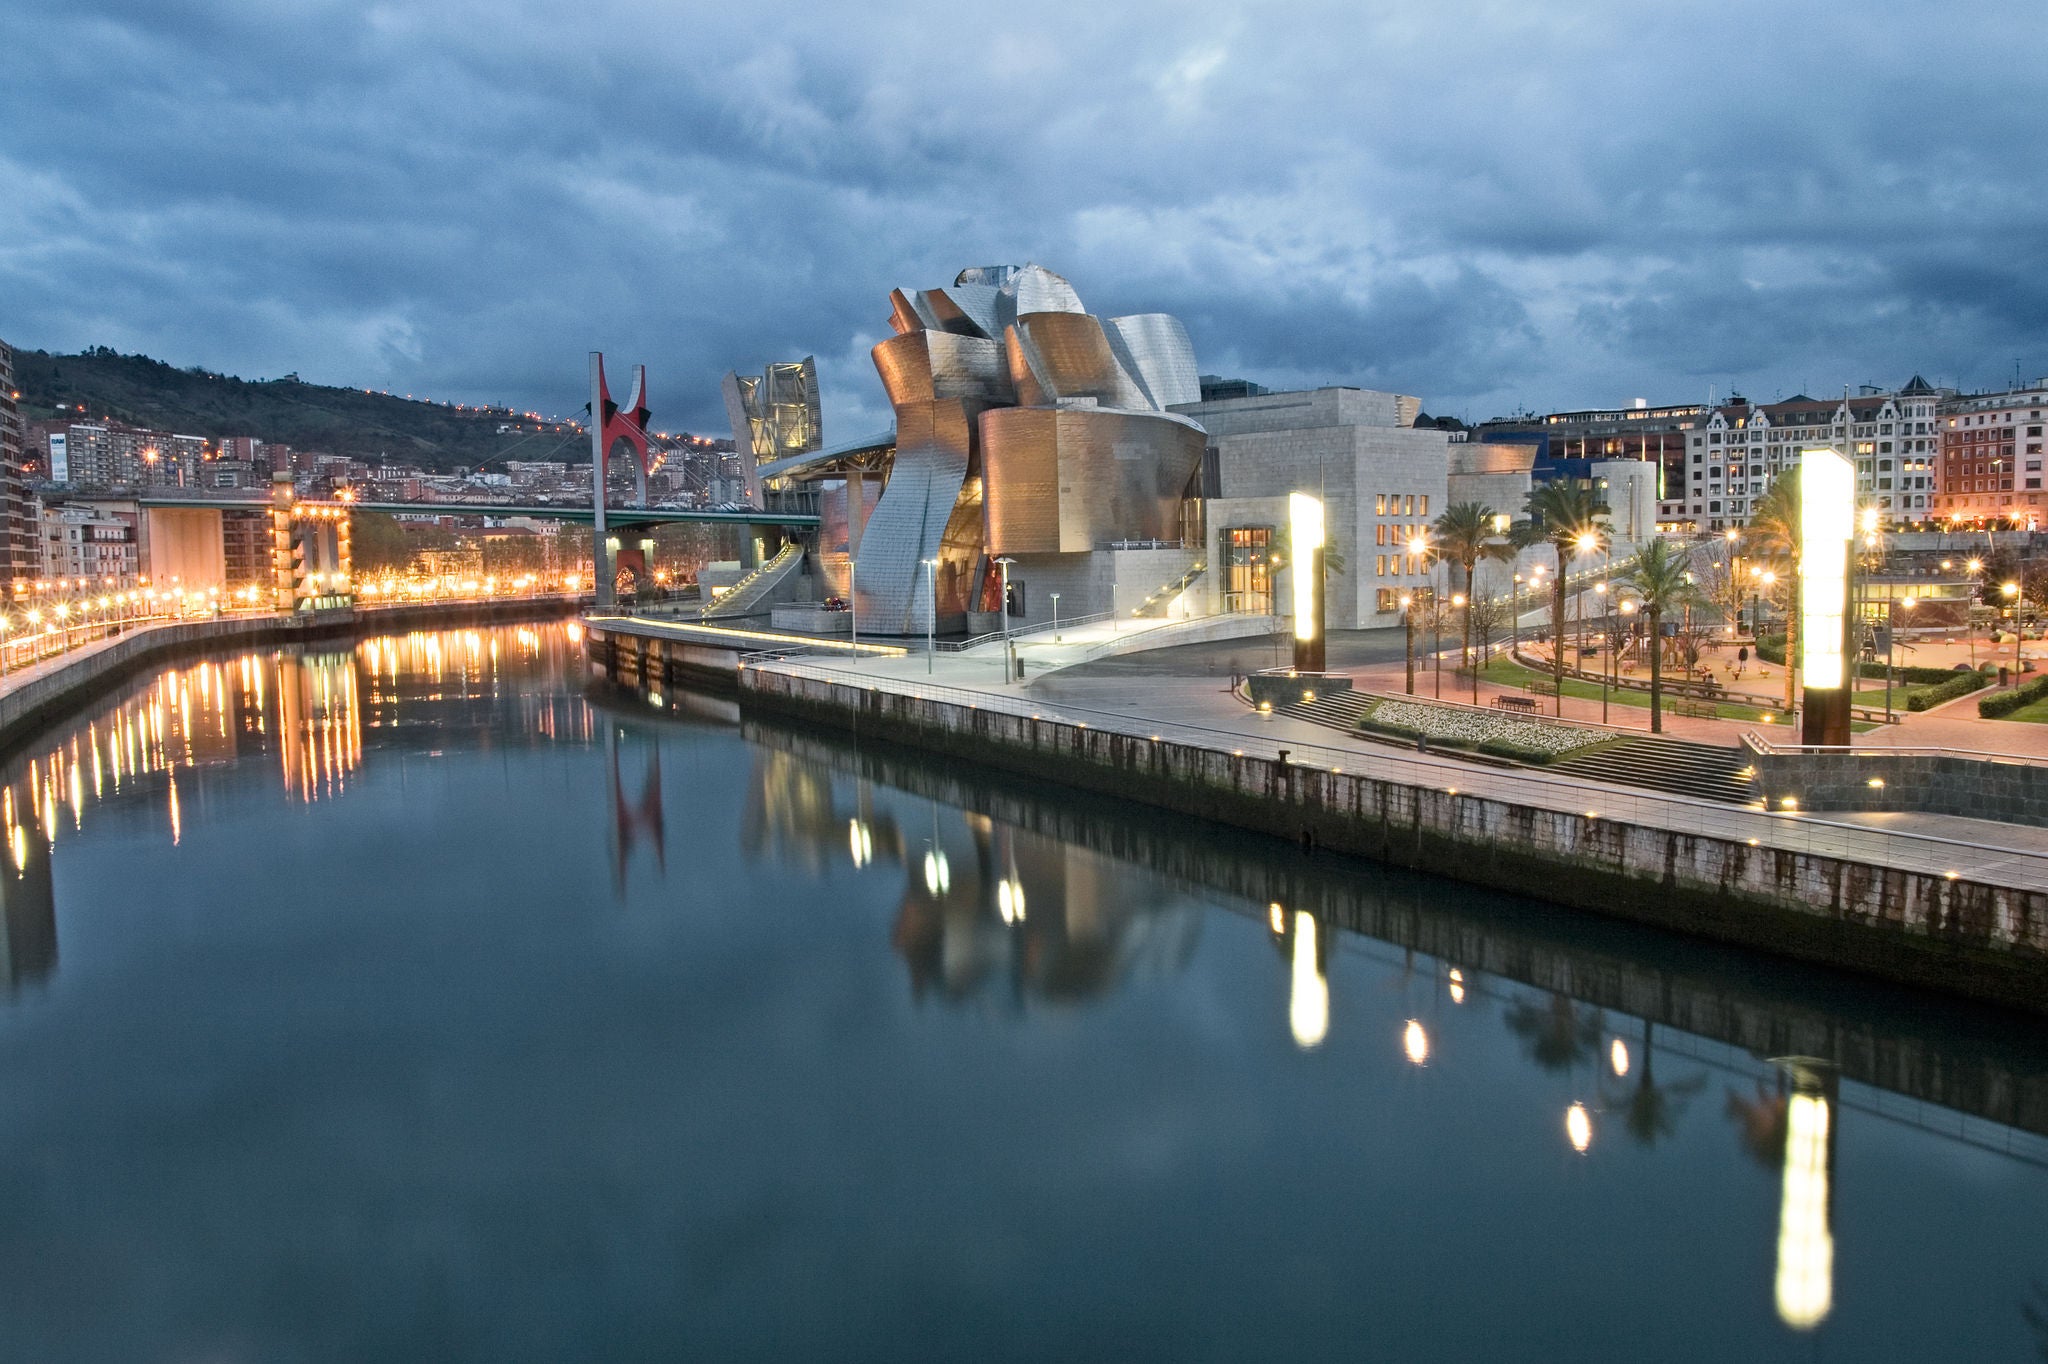  Guggenheim Museum of  Bilbao